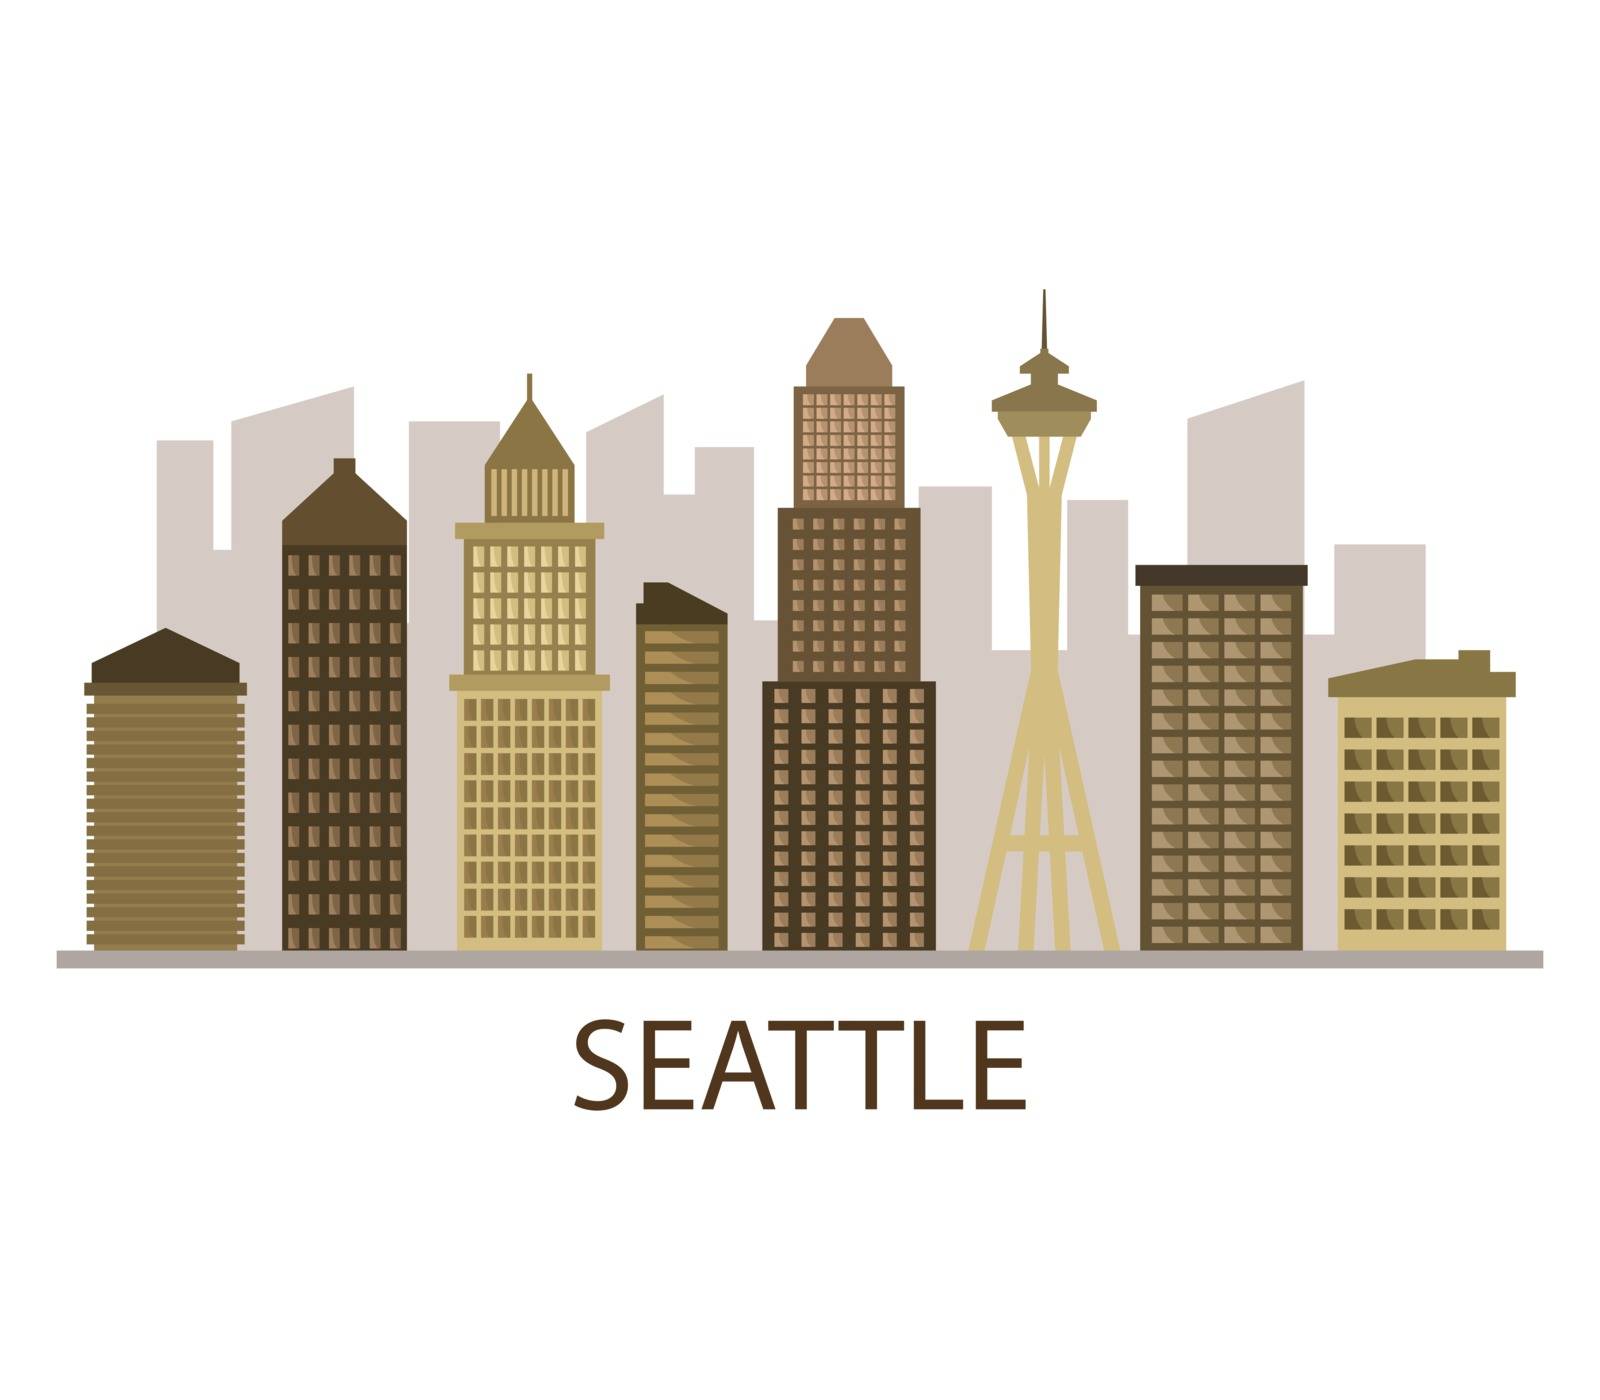 Seattle skyline by Mark1987